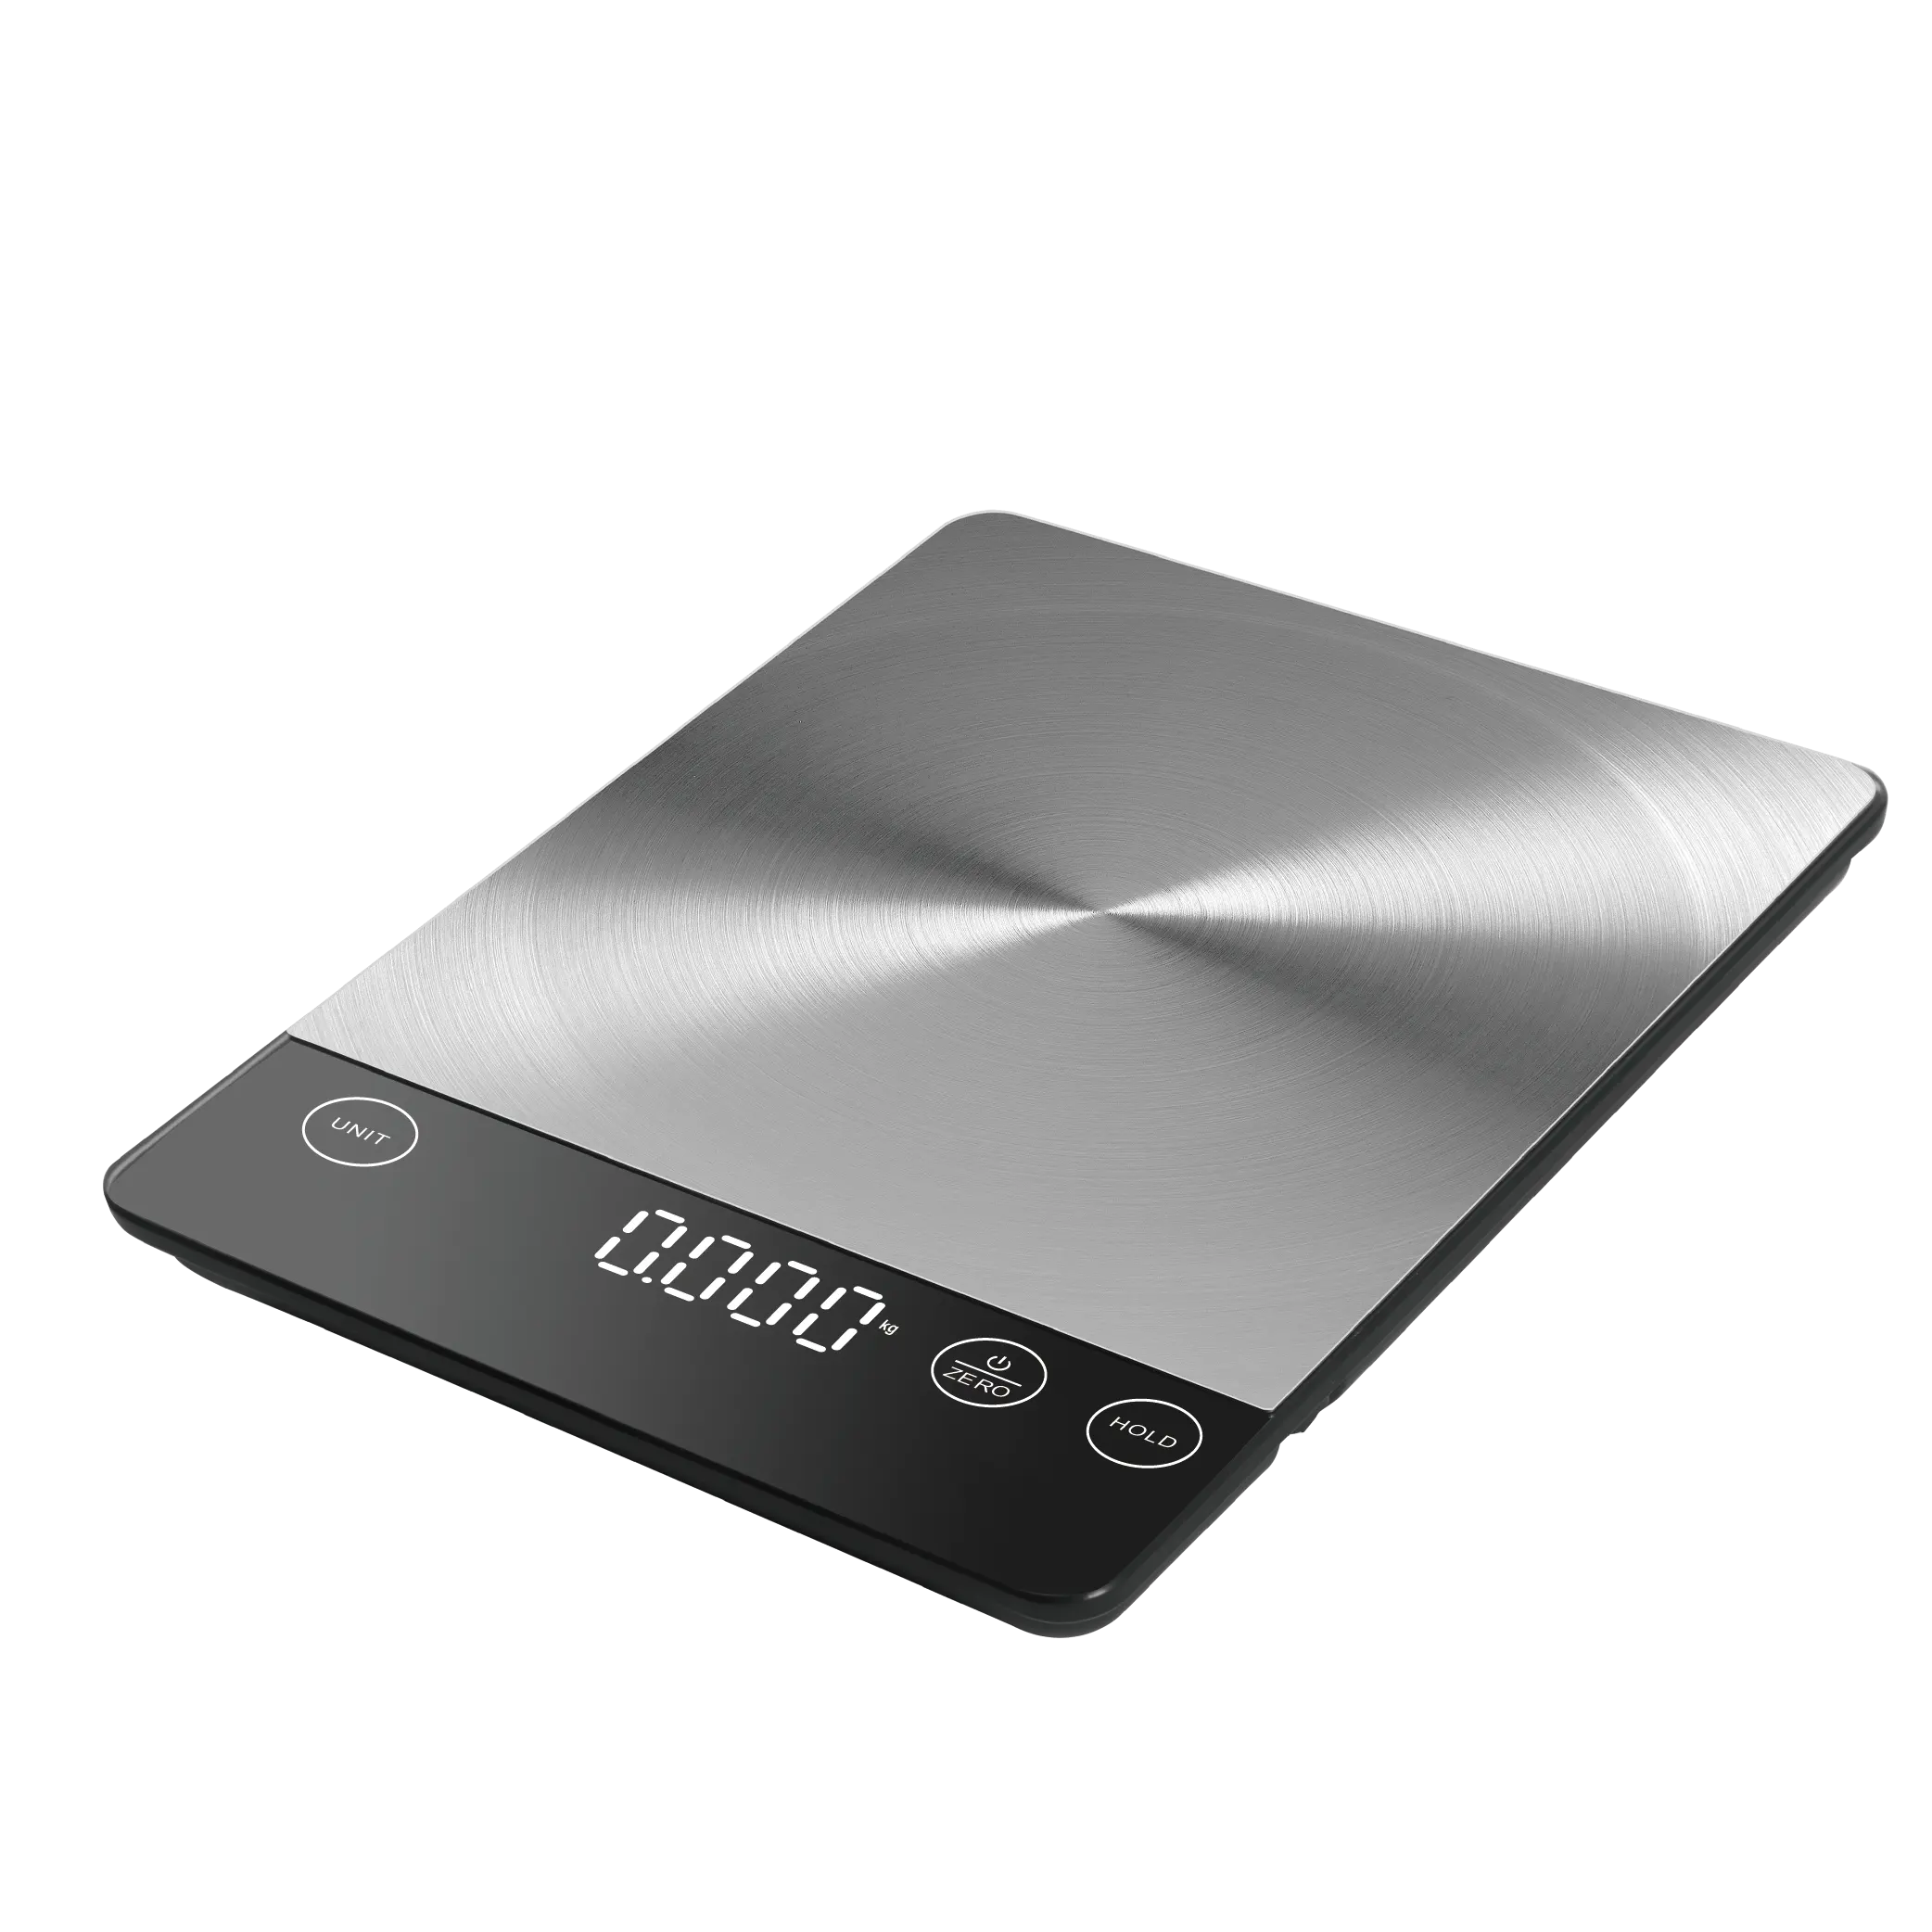 Balança eletrônica digital de aço inoxidável com display LED de alta qualidade para cozinha, balança de peso para alimentos